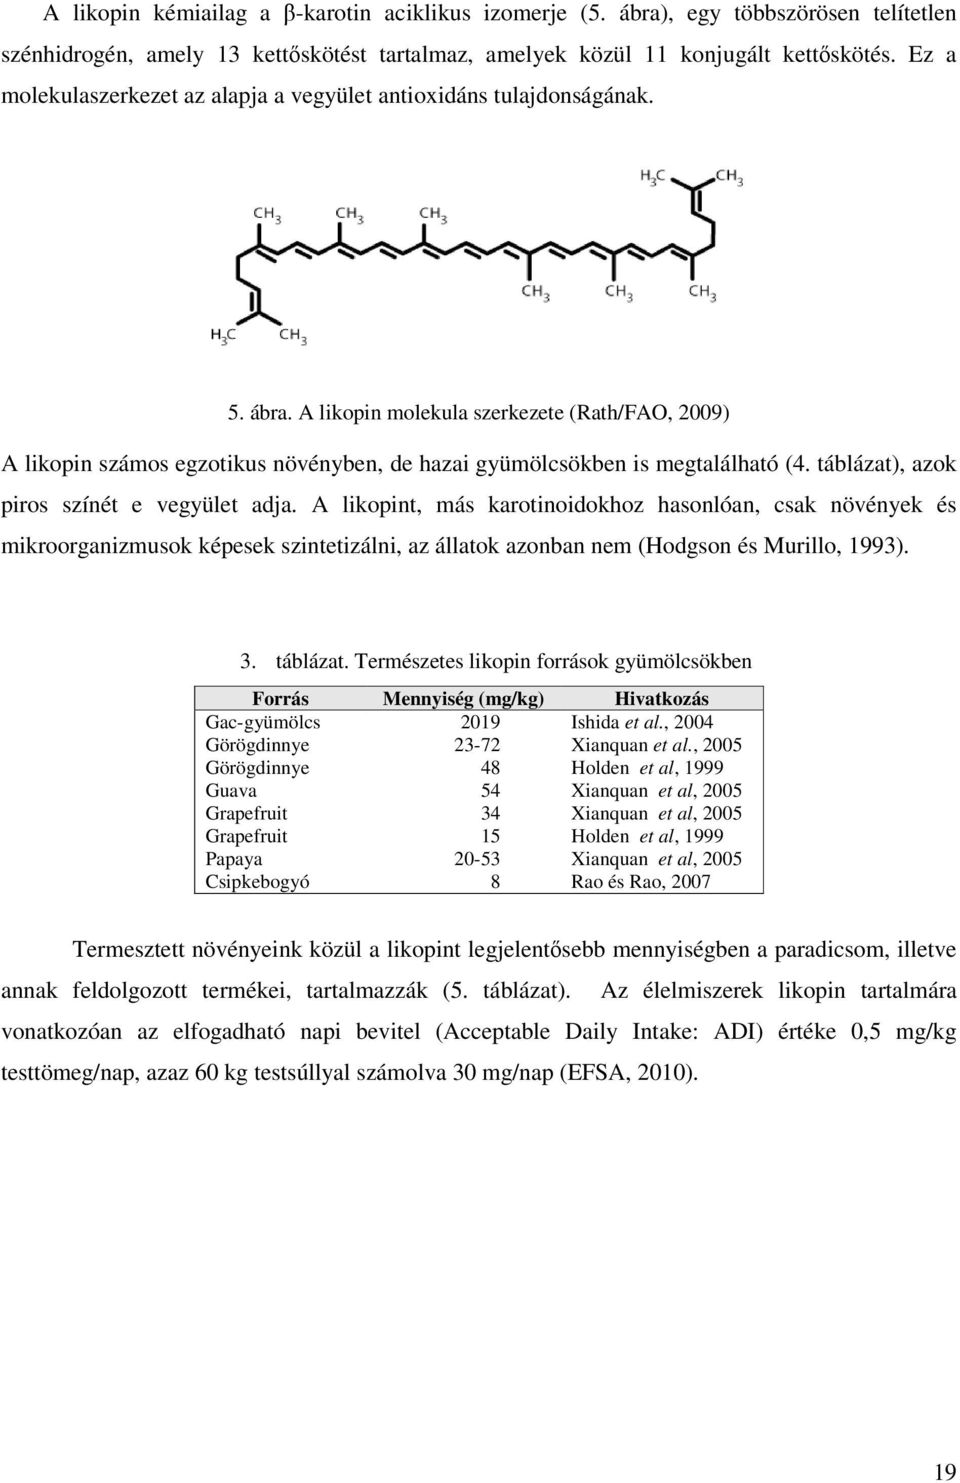 A likopin molekula szerkezete (Rath/FAO, 2009) A likopin számos egzotikus növényben, de hazai gyümölcsökben is megtalálható (4. táblázat), azok piros színét e vegyület adja.